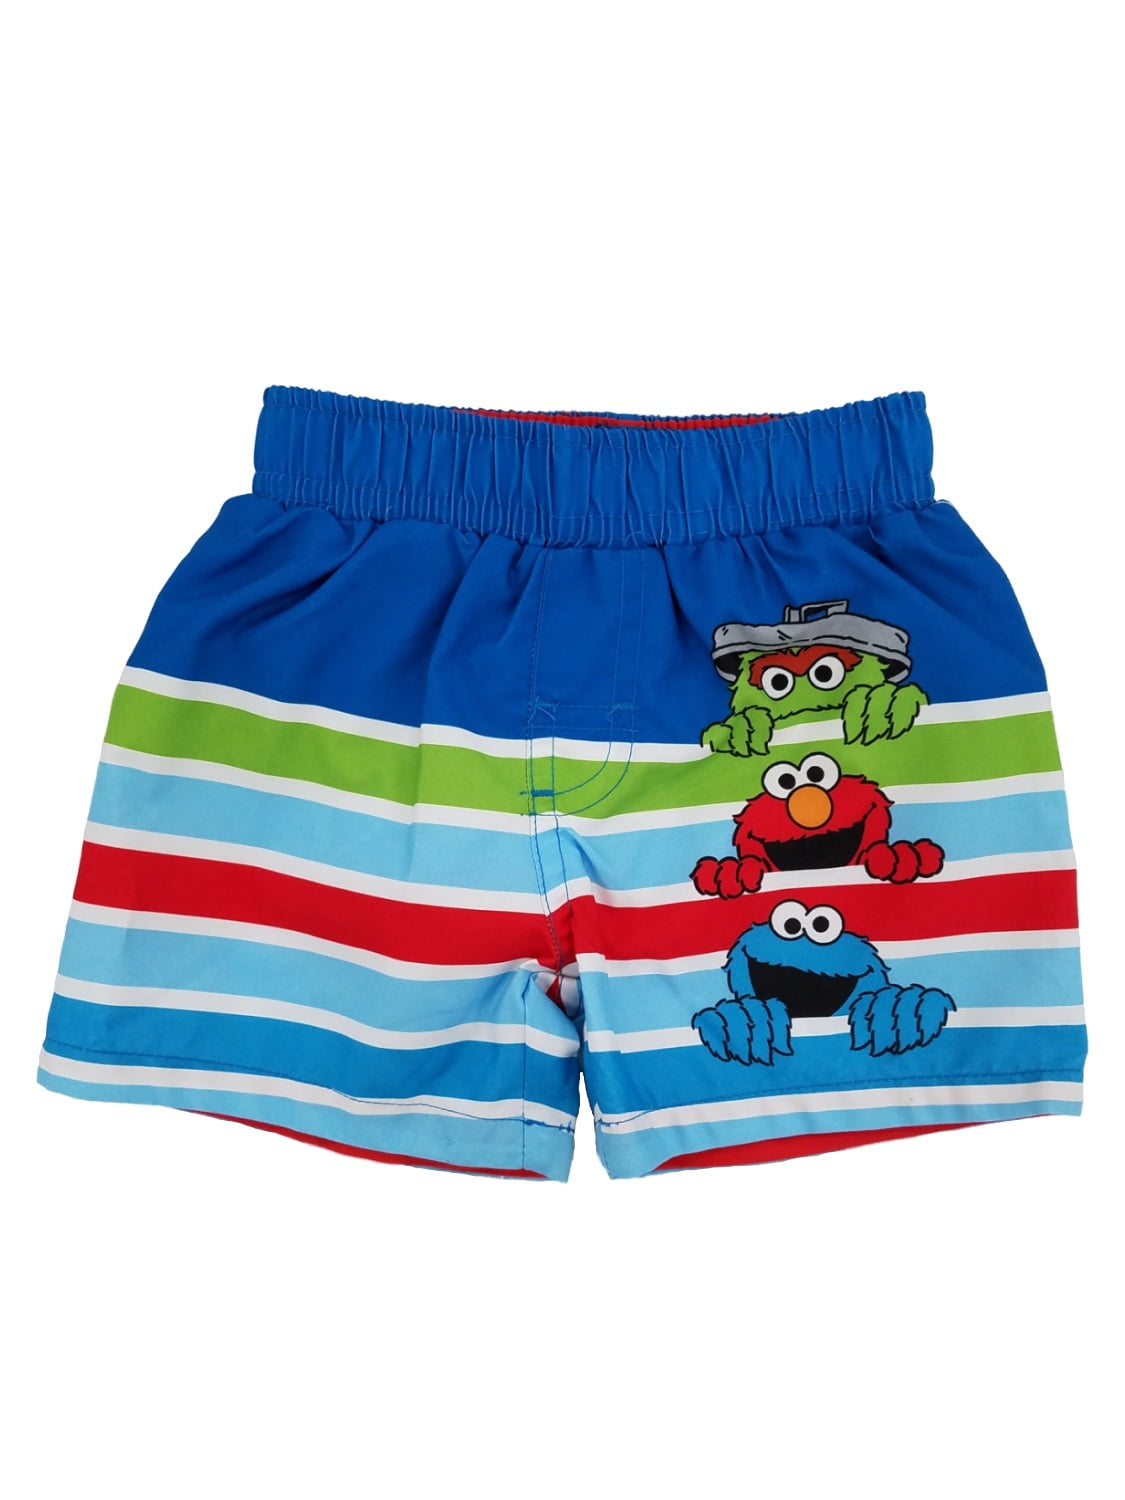 Sesame Street Muppets Baby Boy Swim Trunks Shorts Size 3-6m UPF 50 